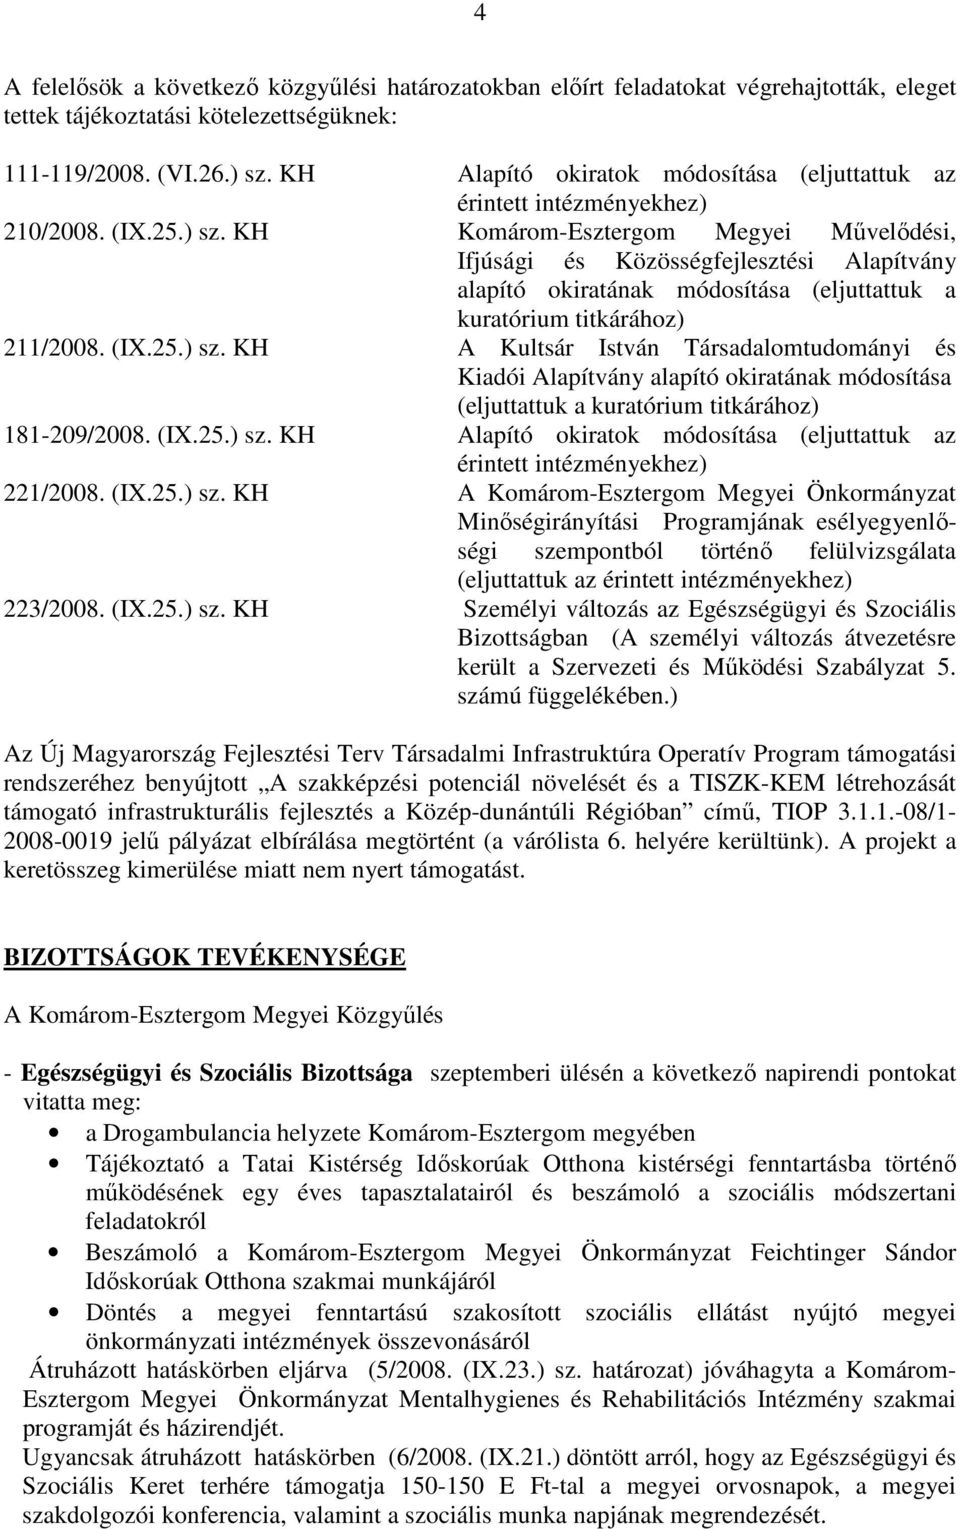 KH Komárom-Esztergom Megyei Mővelıdési, Ifjúsági és Közösségfejlesztési Alapítvány alapító okiratának módosítása (eljuttattuk a kuratórium titkárához) 211/2008. (IX.25.) sz.